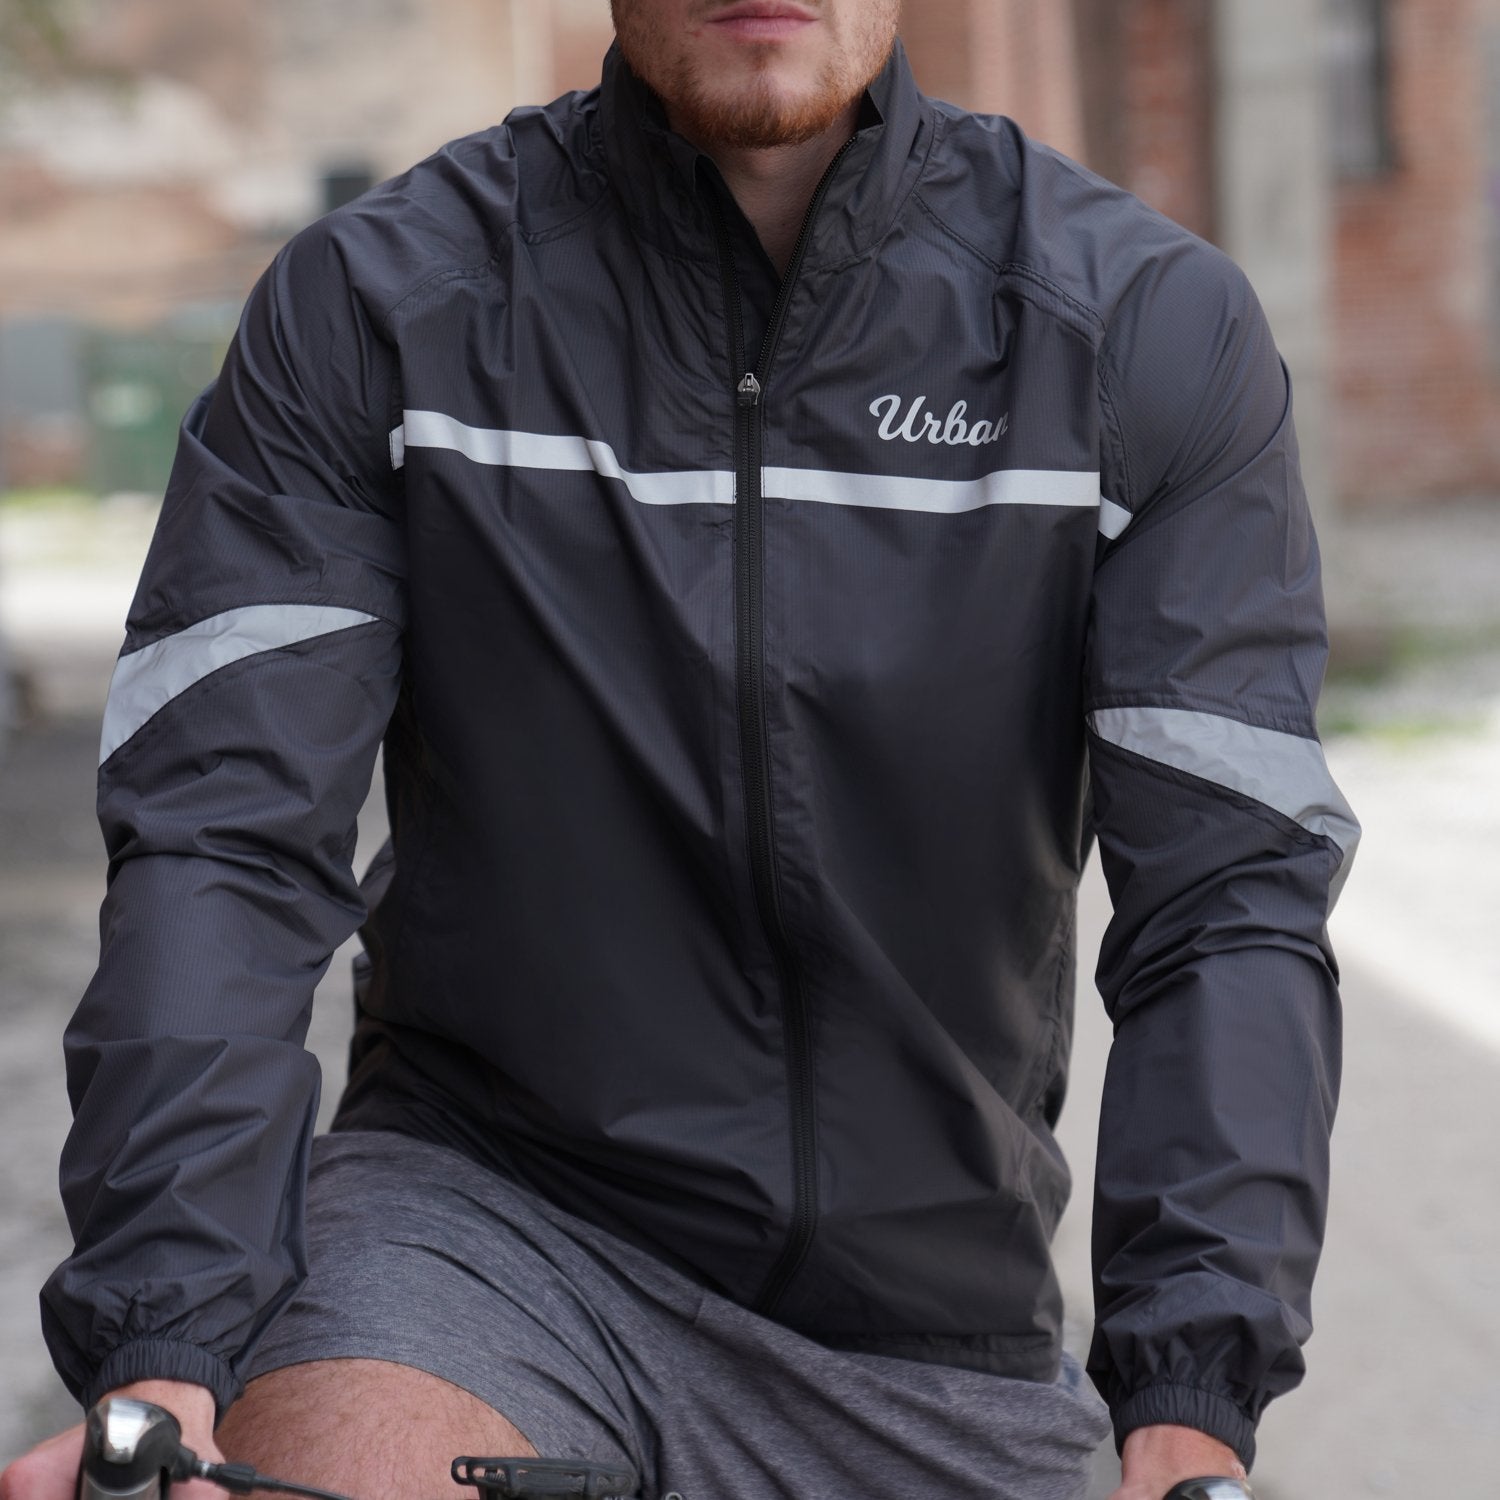 Urban Windproof & Waterproof Commuters Cycling Jacket - Black